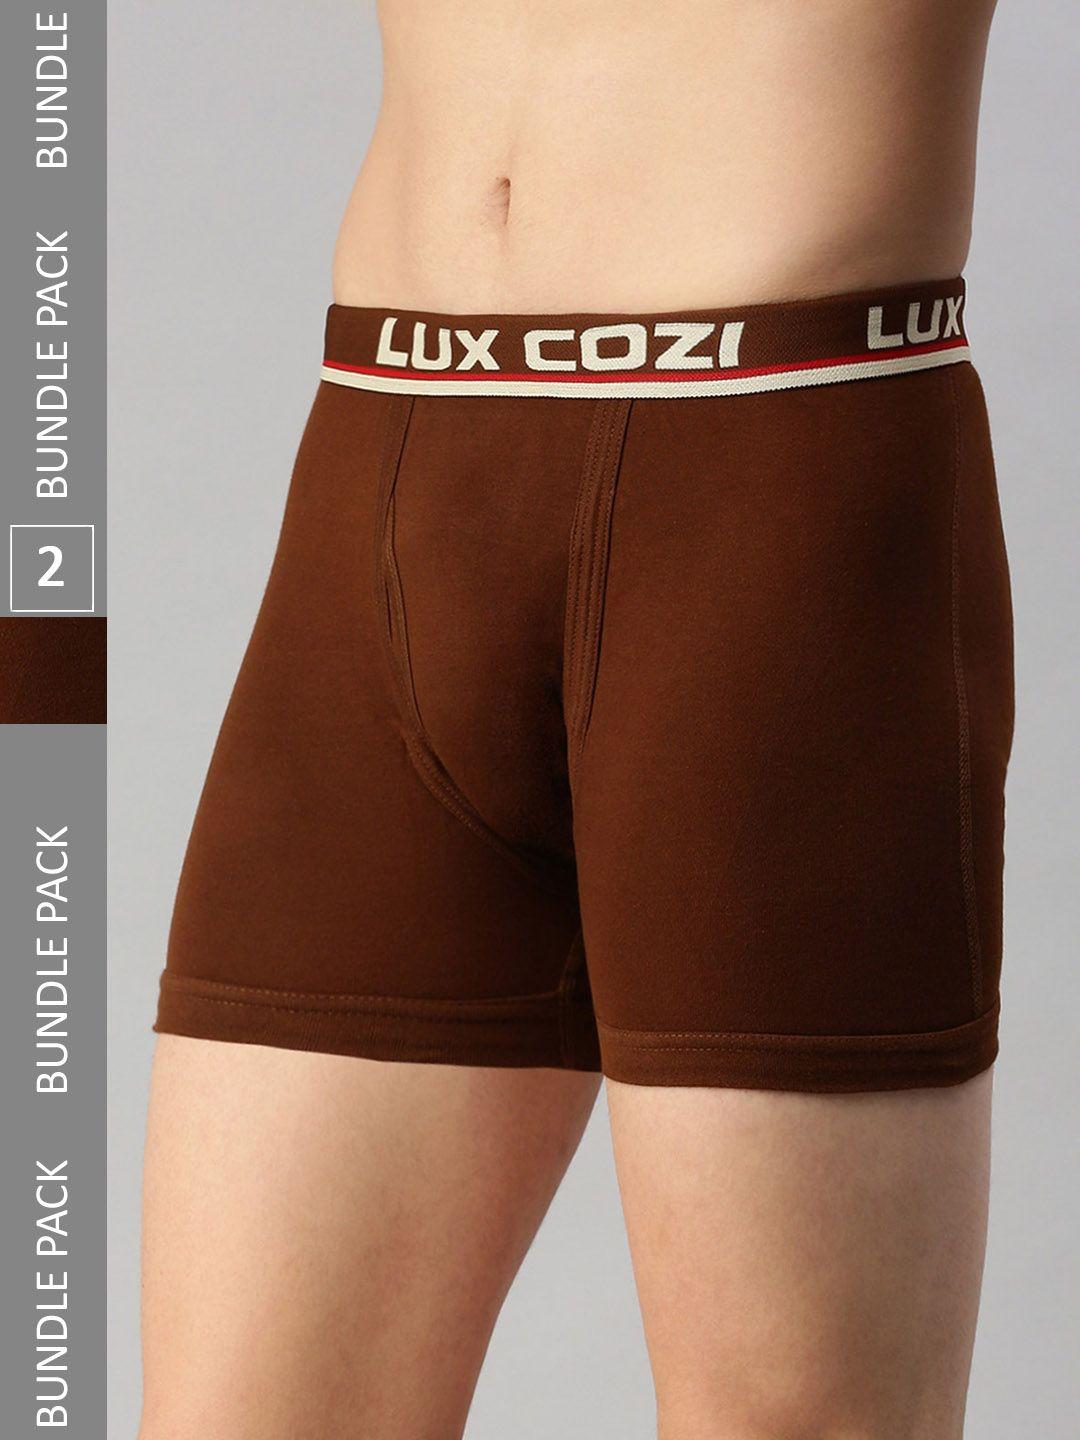 lux cozi men pack of 2 mid-rise trunks cozi_intlock_mst_2pc